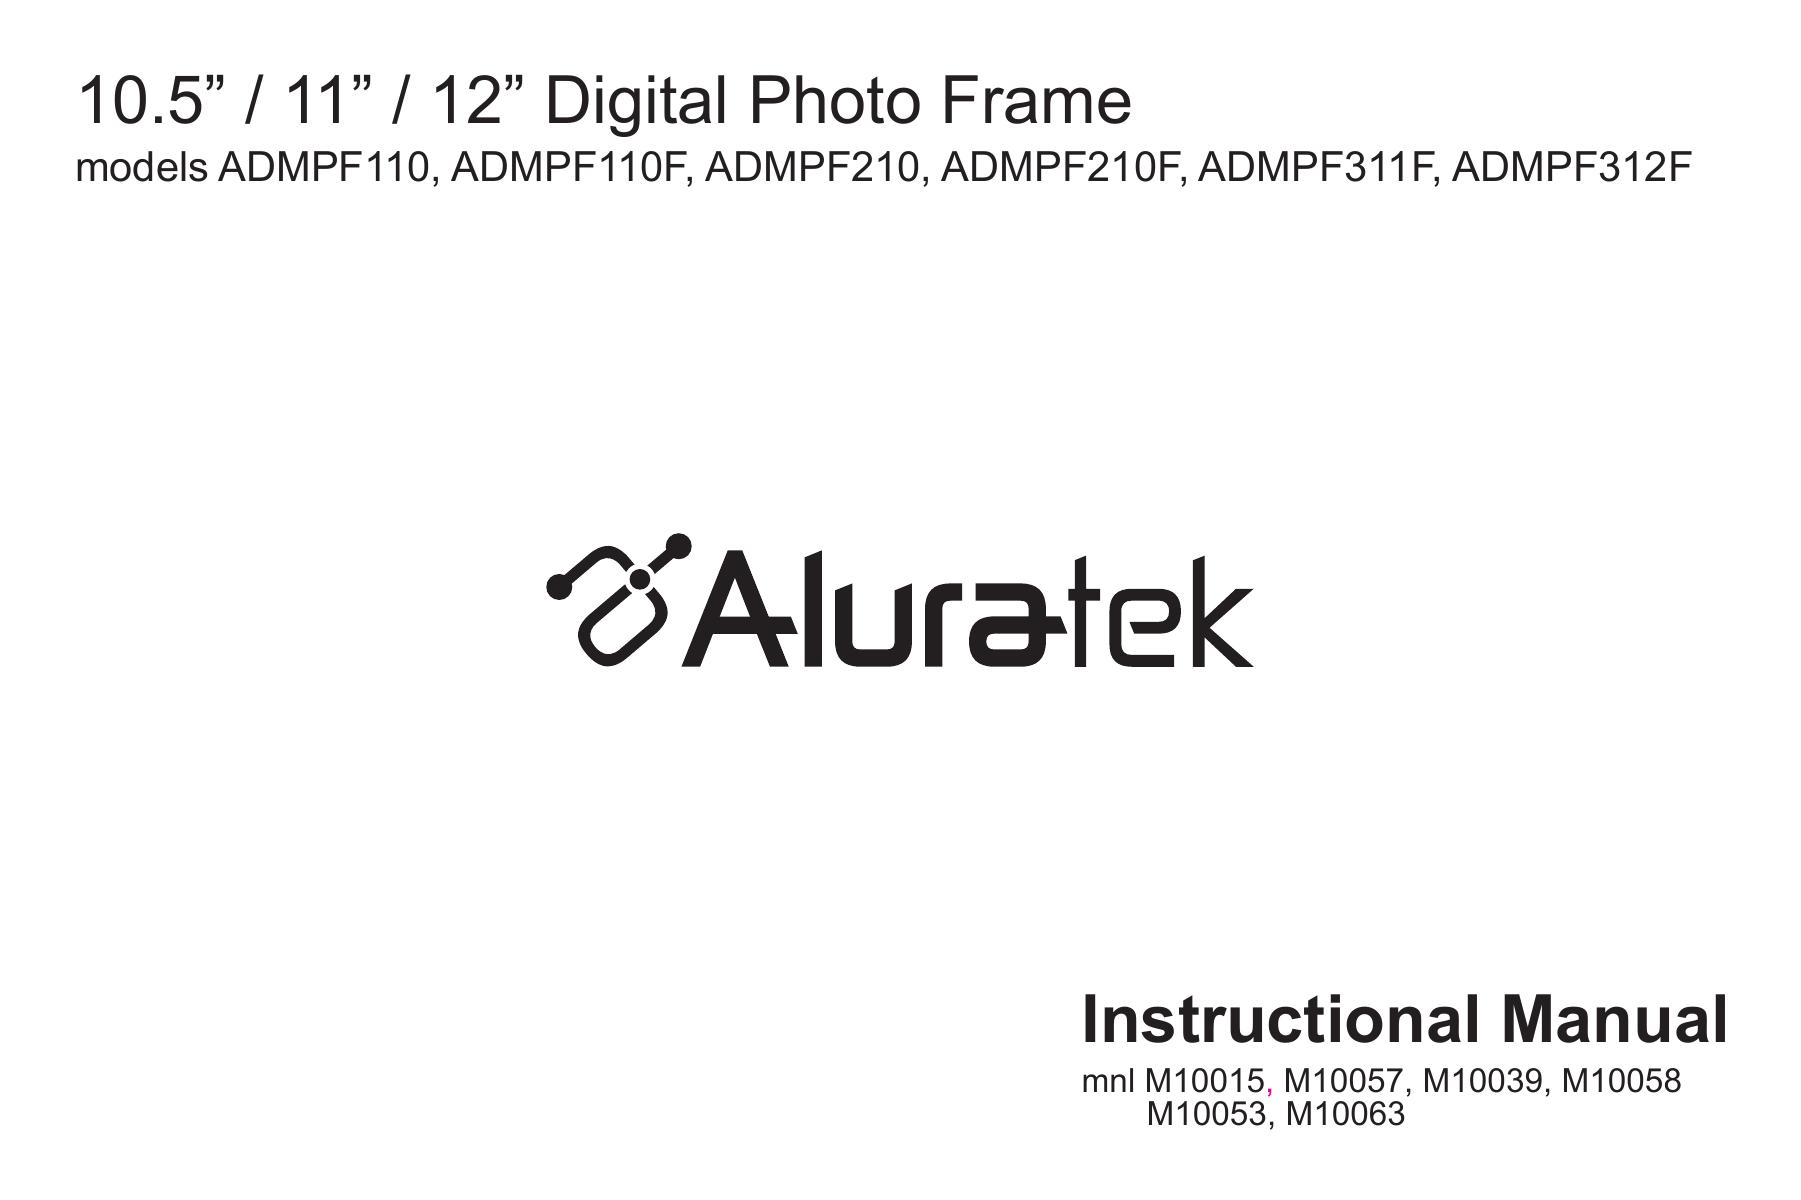 Aluratek M10039 Digital Photo Frame User Manual